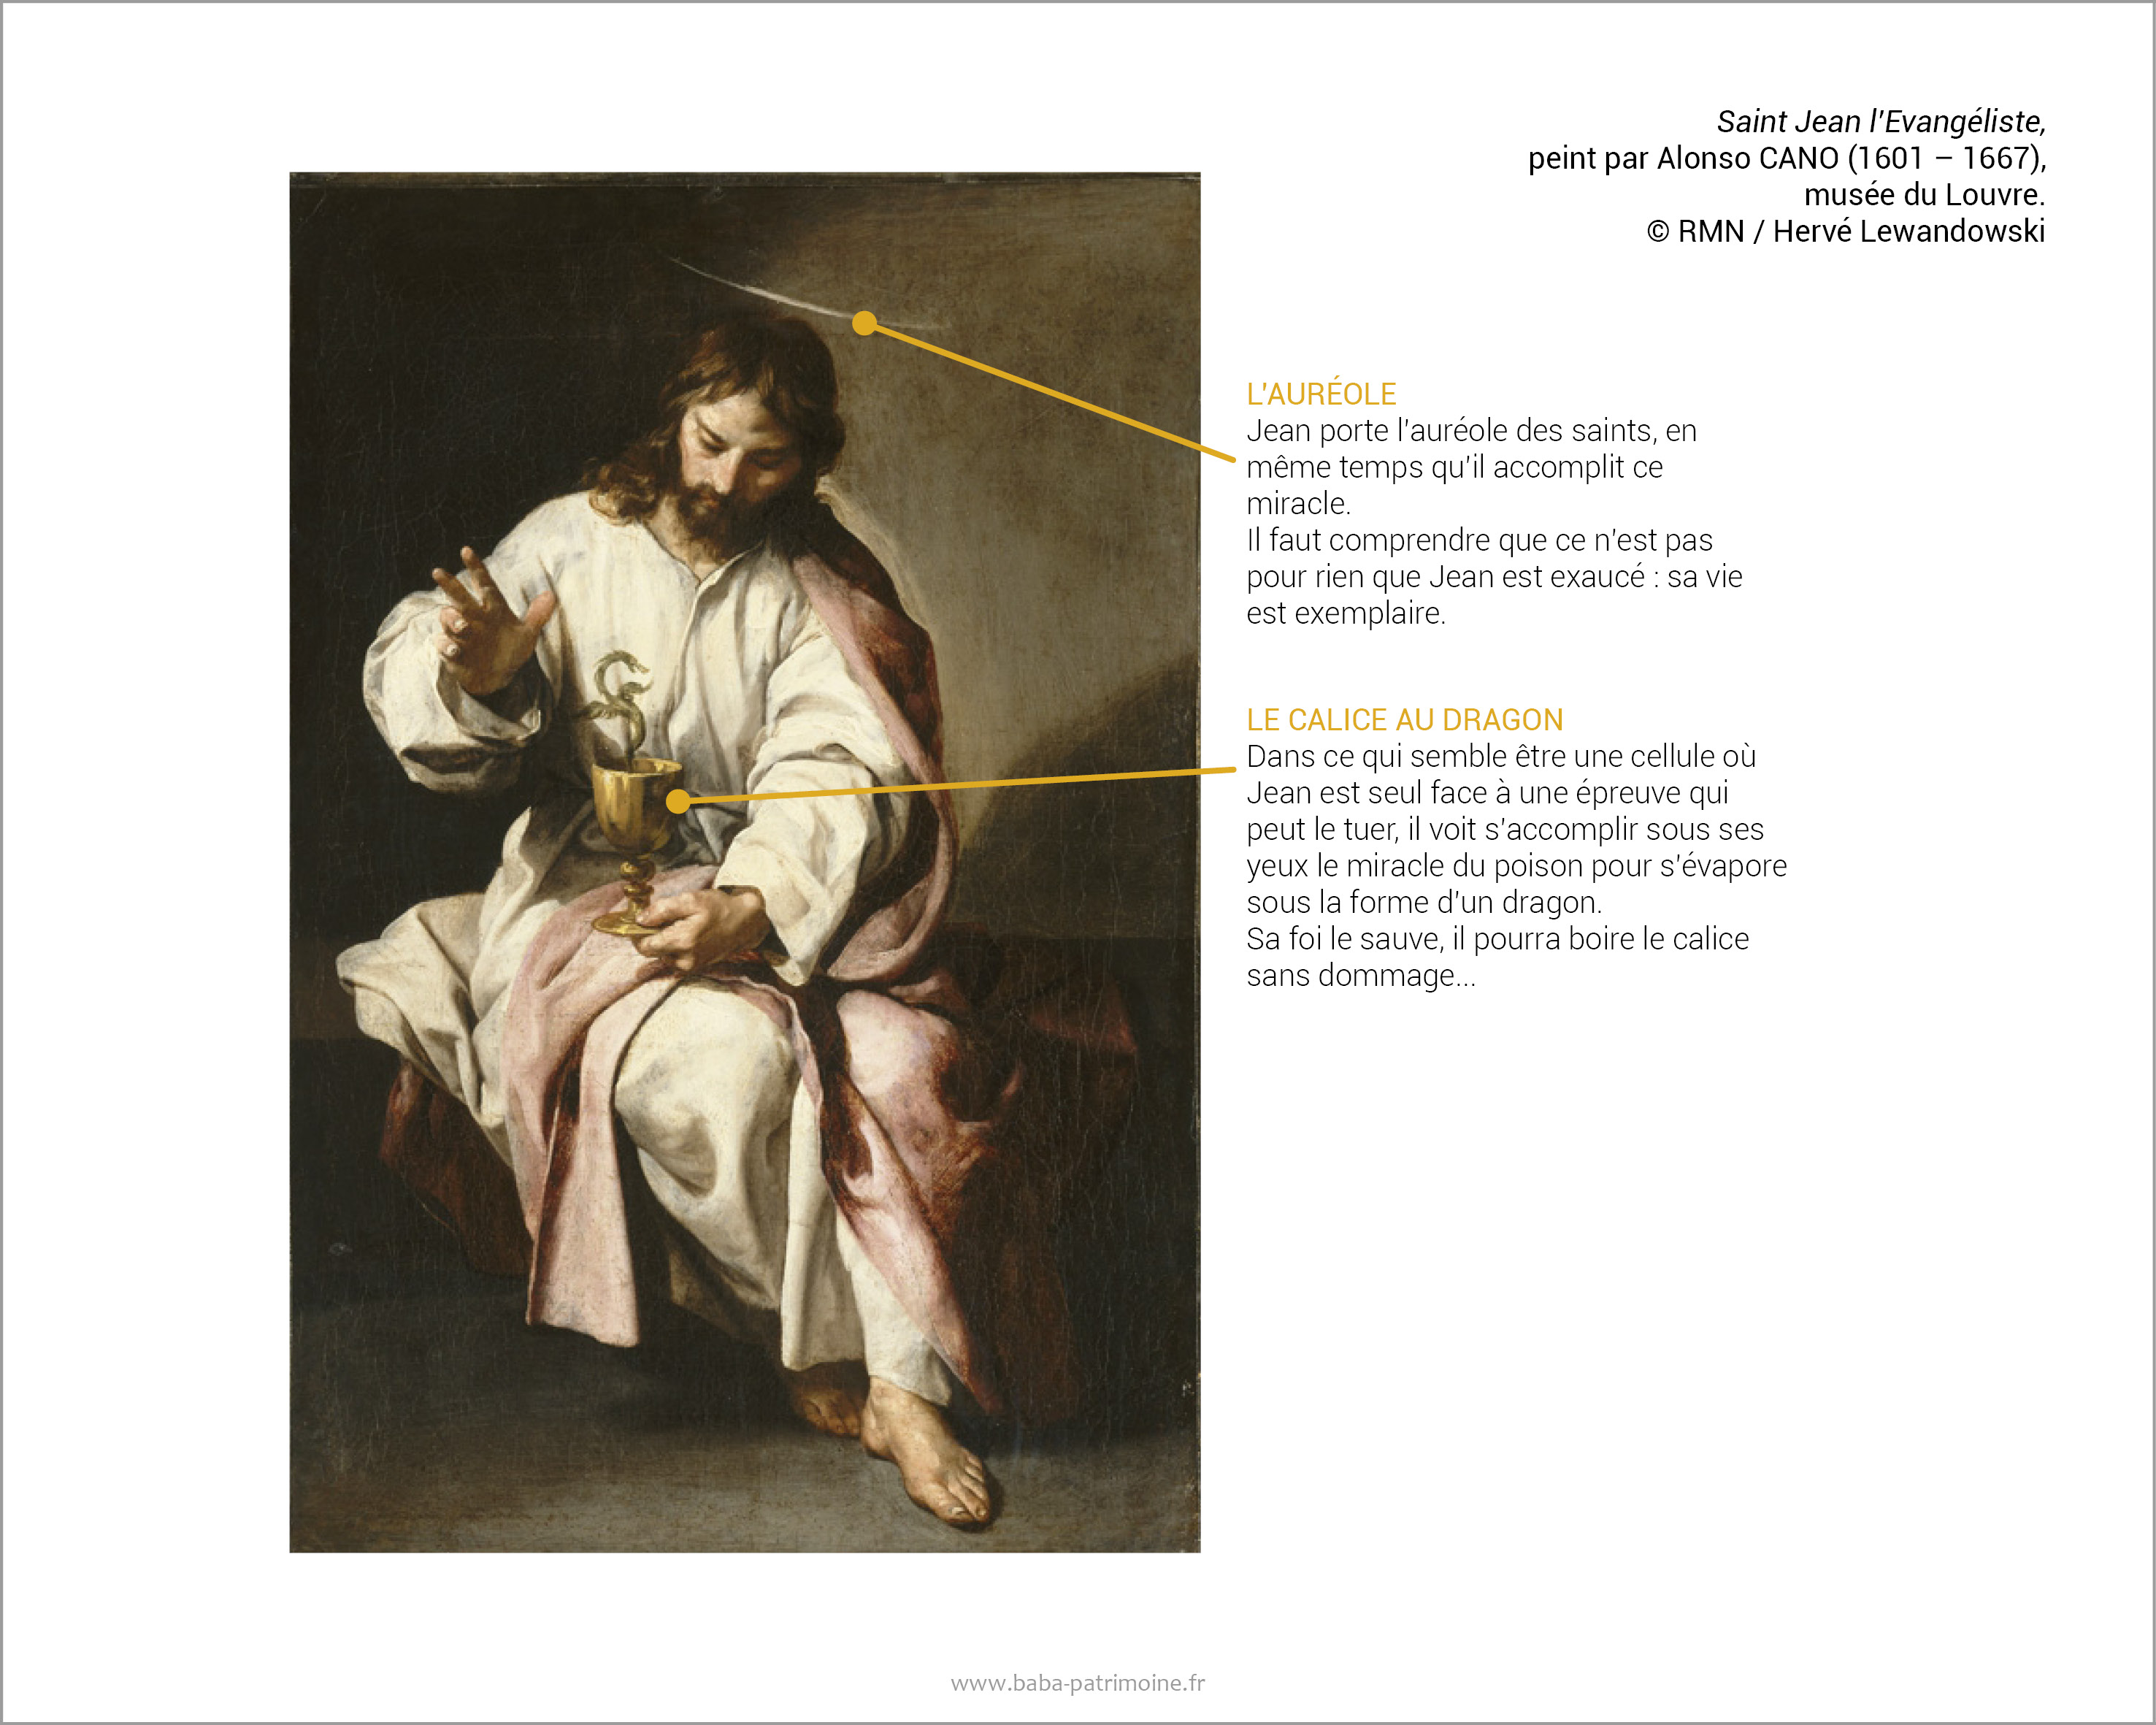 Saint Jean l’Evangéliste, peint par Alonso CANO (1601 – 1667), musée du Louvre. © RMN / Hervé Lewandowski